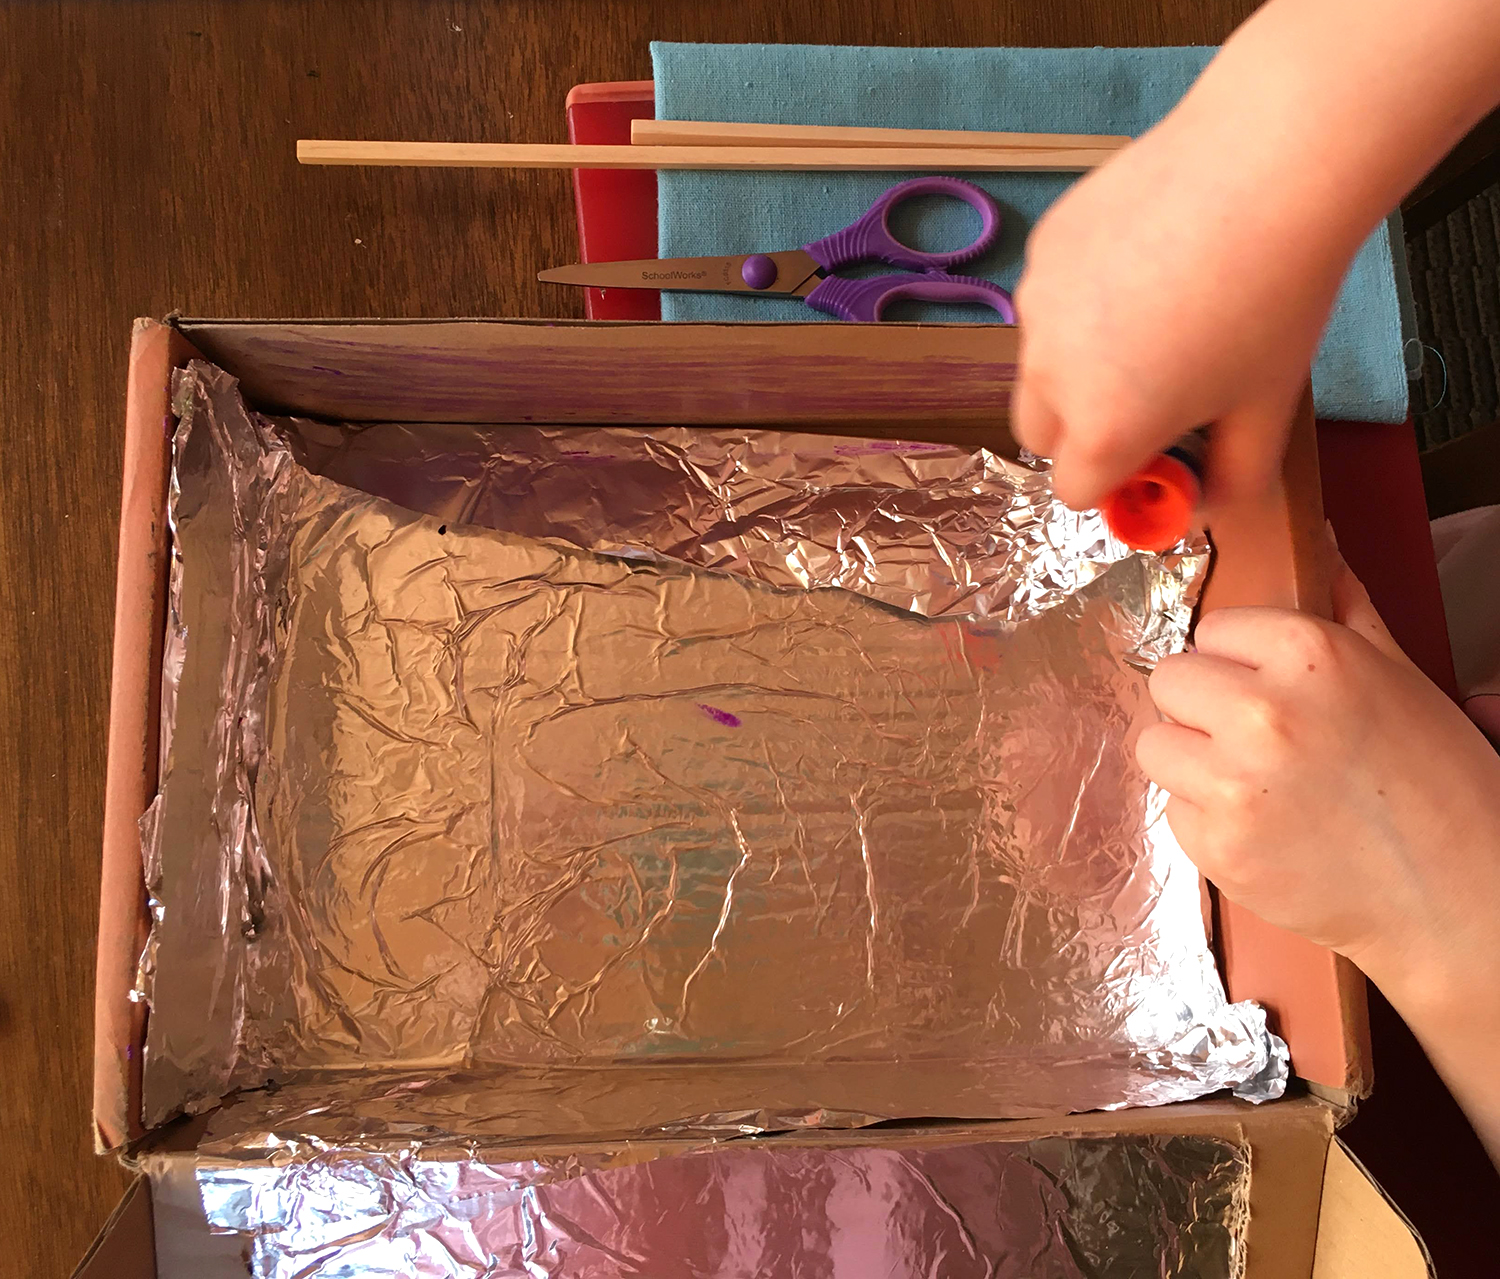 Child glues foil into a box